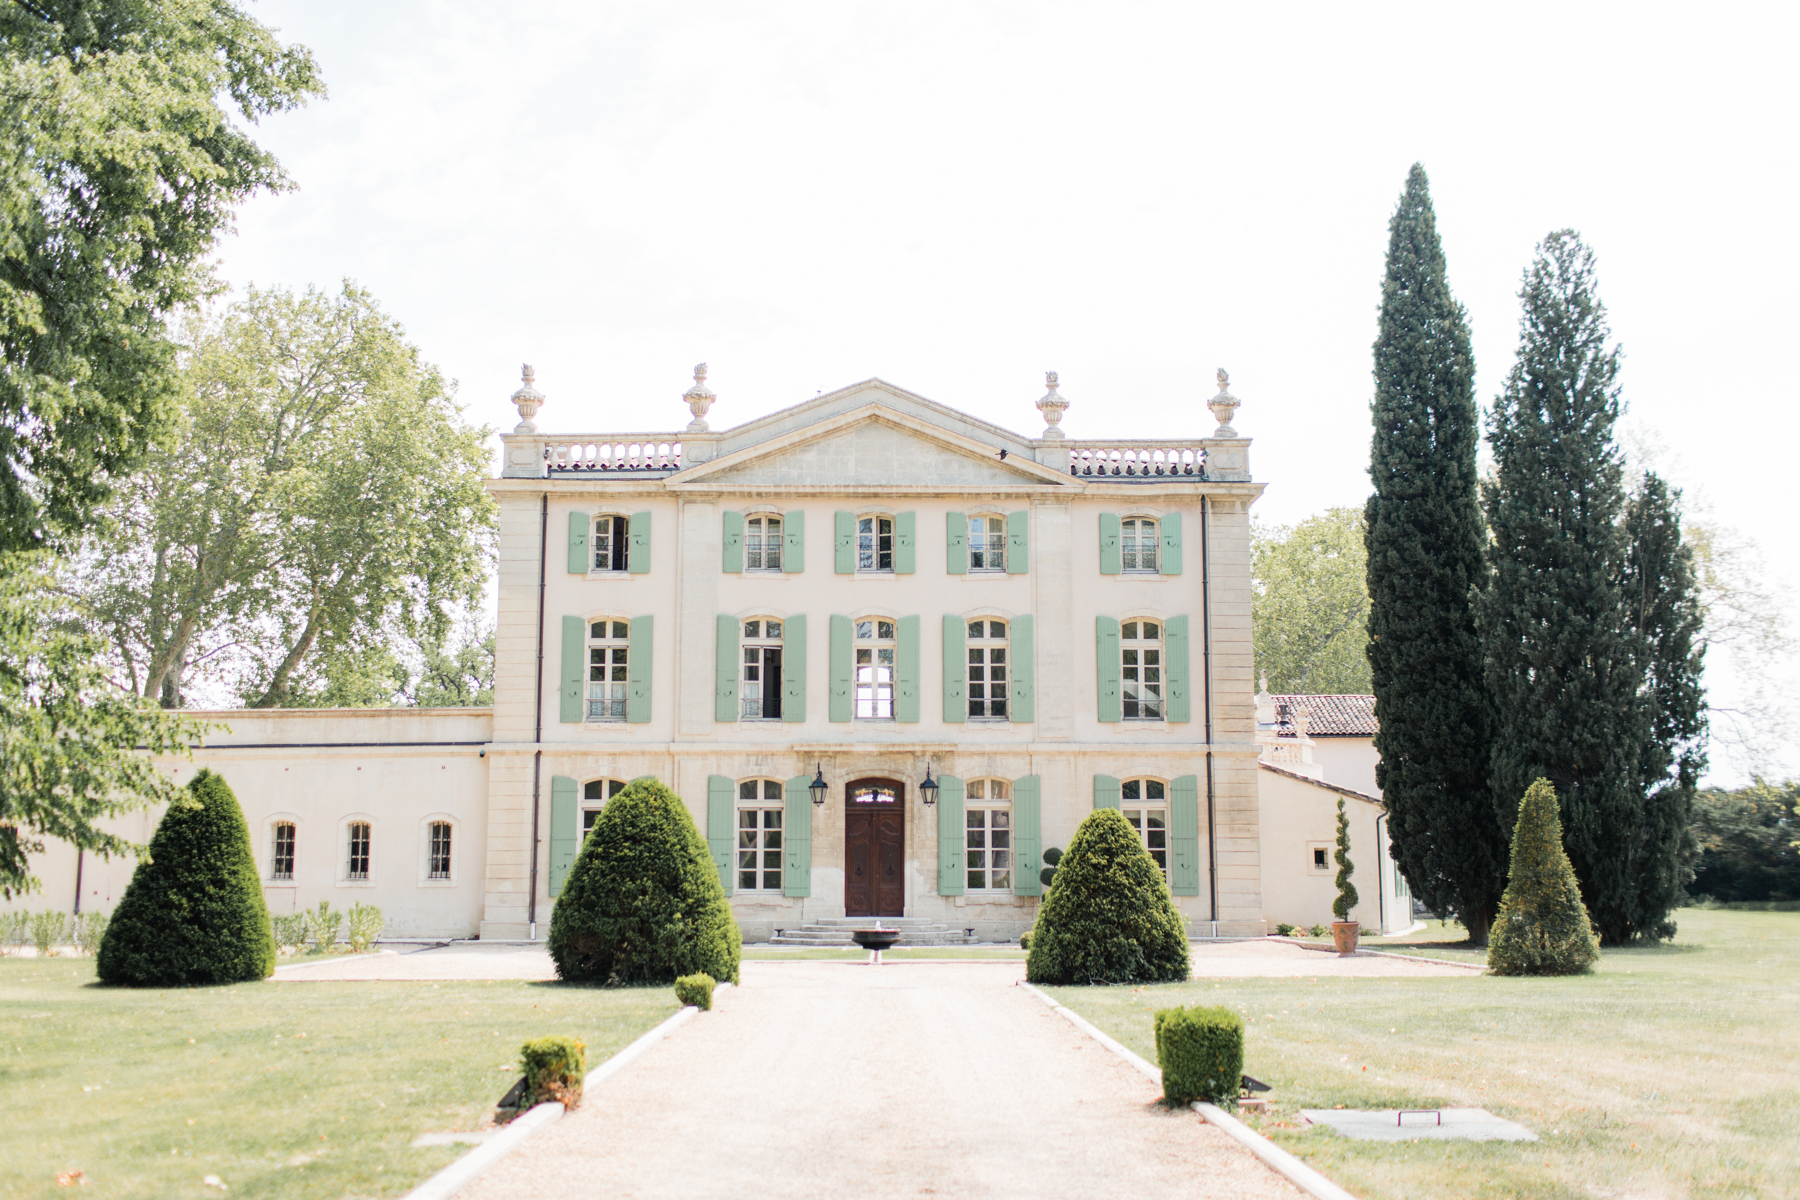 Mariage au Château de Tourreau - Megan + Oliver - Blog Mariage Madame C